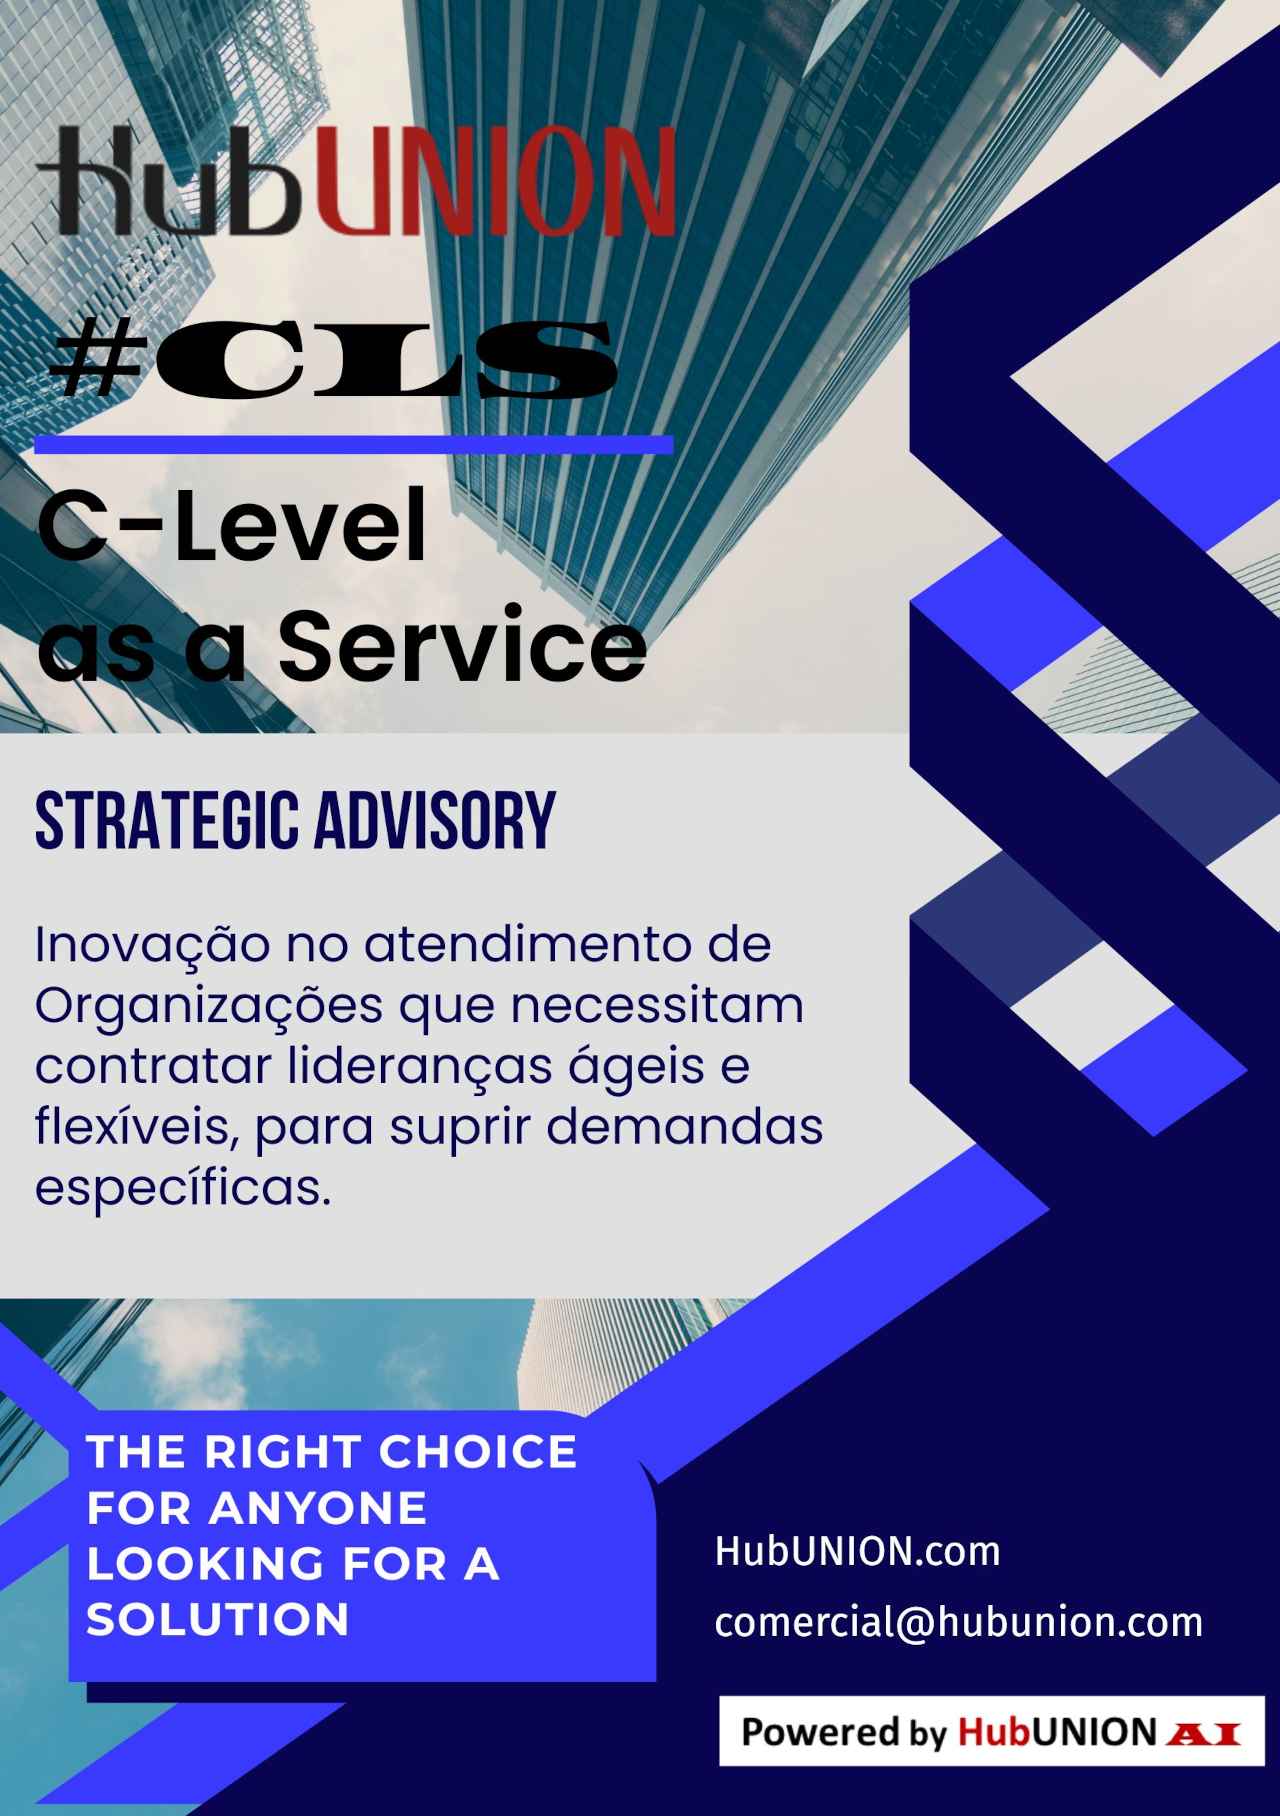 Serviço CLS - C-Level as a Service